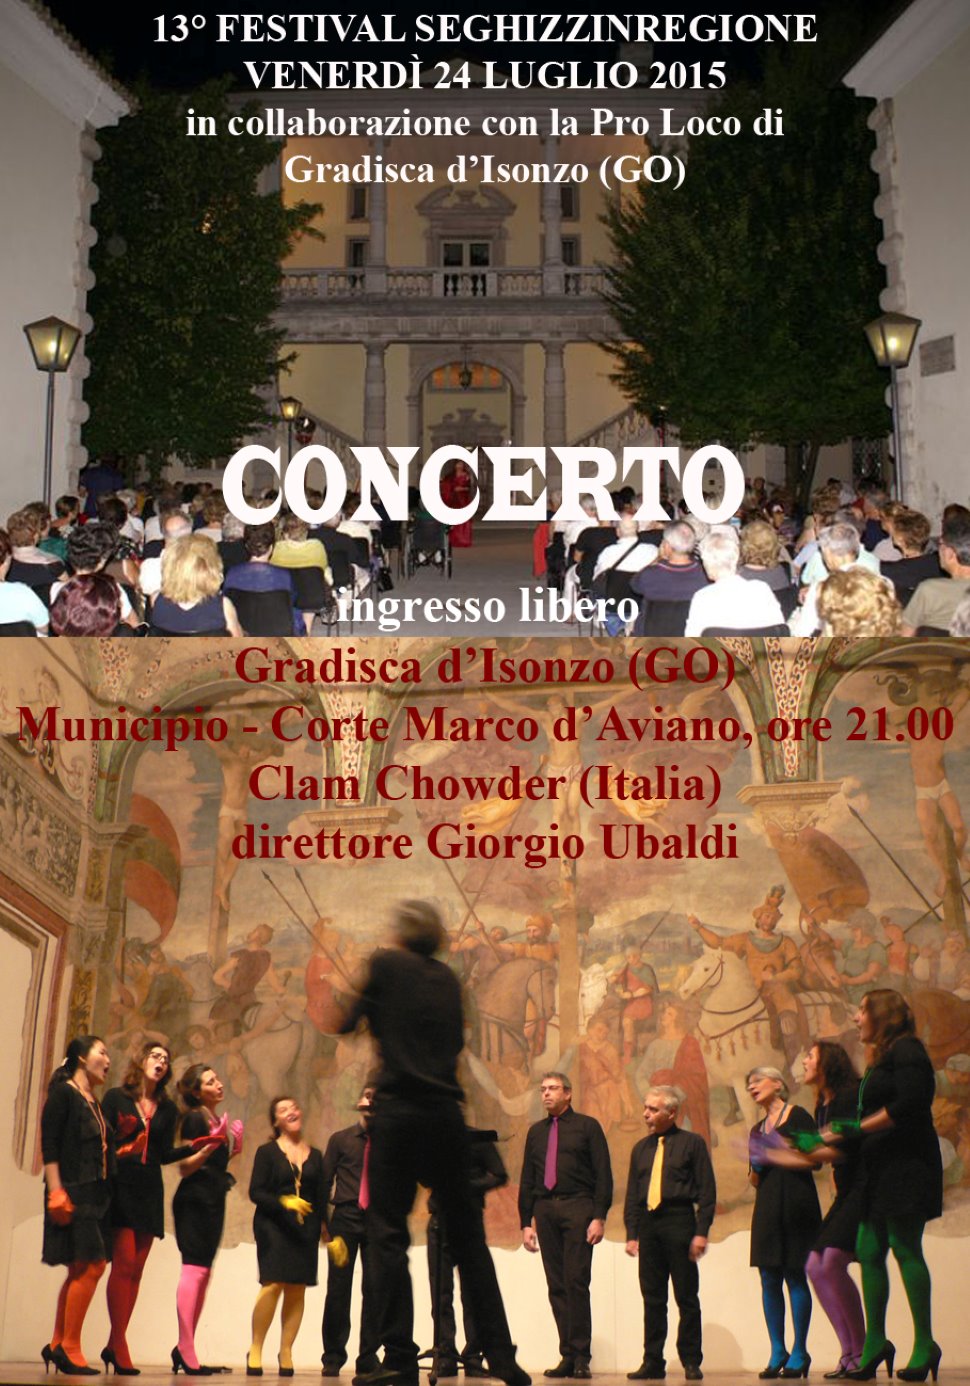 13° FESTIVAL SEGHIZZINREGIONE concerto a Gradisca d'Isonzo (GO)